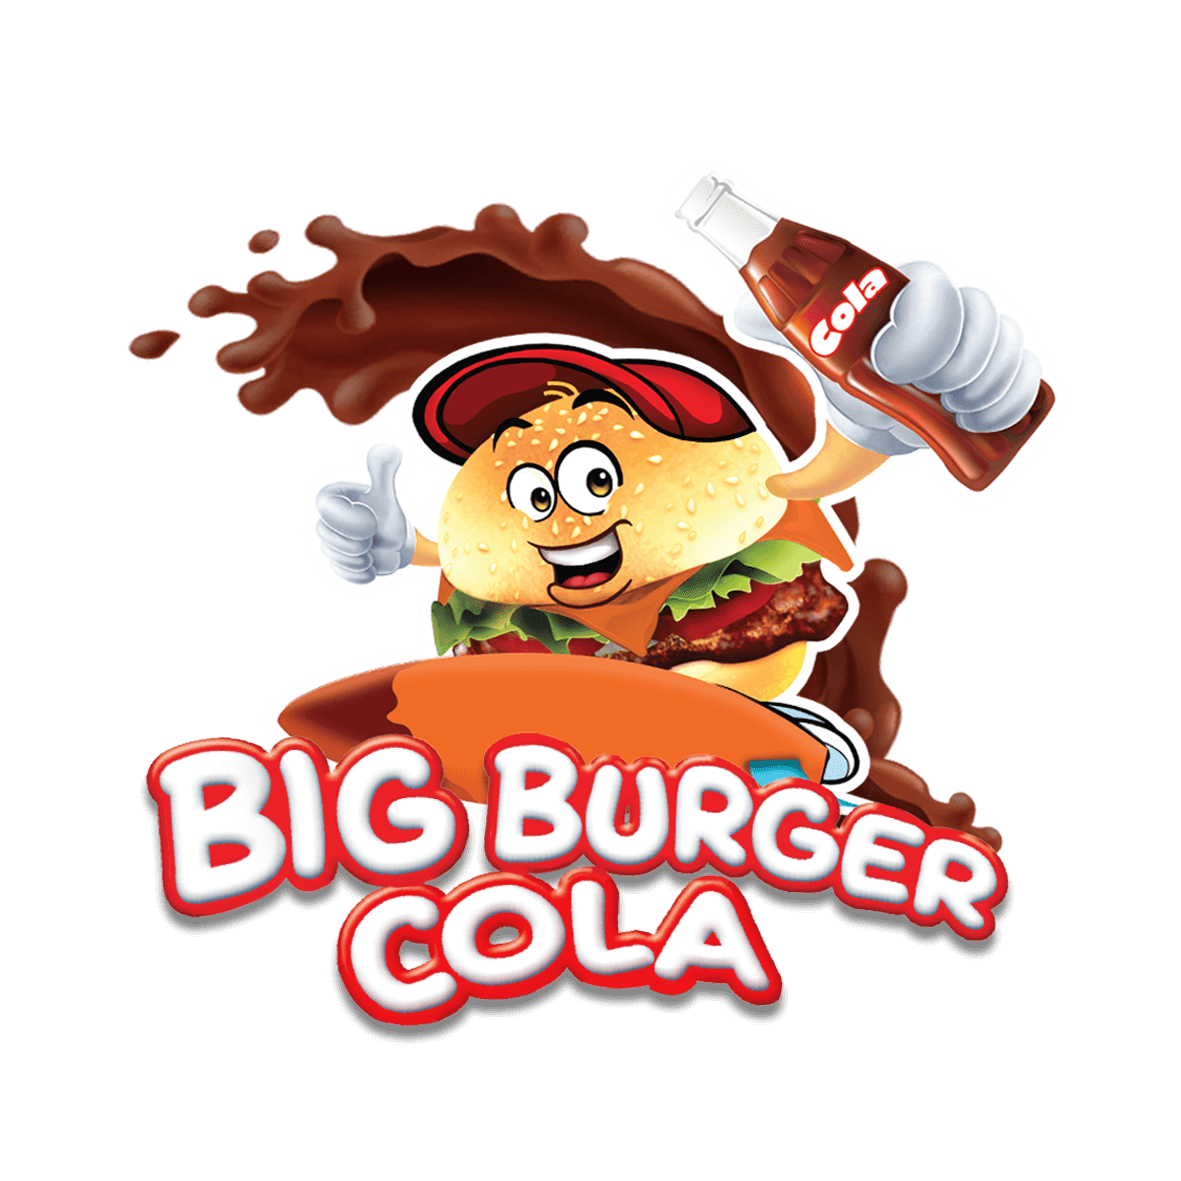 Big Burger Cola